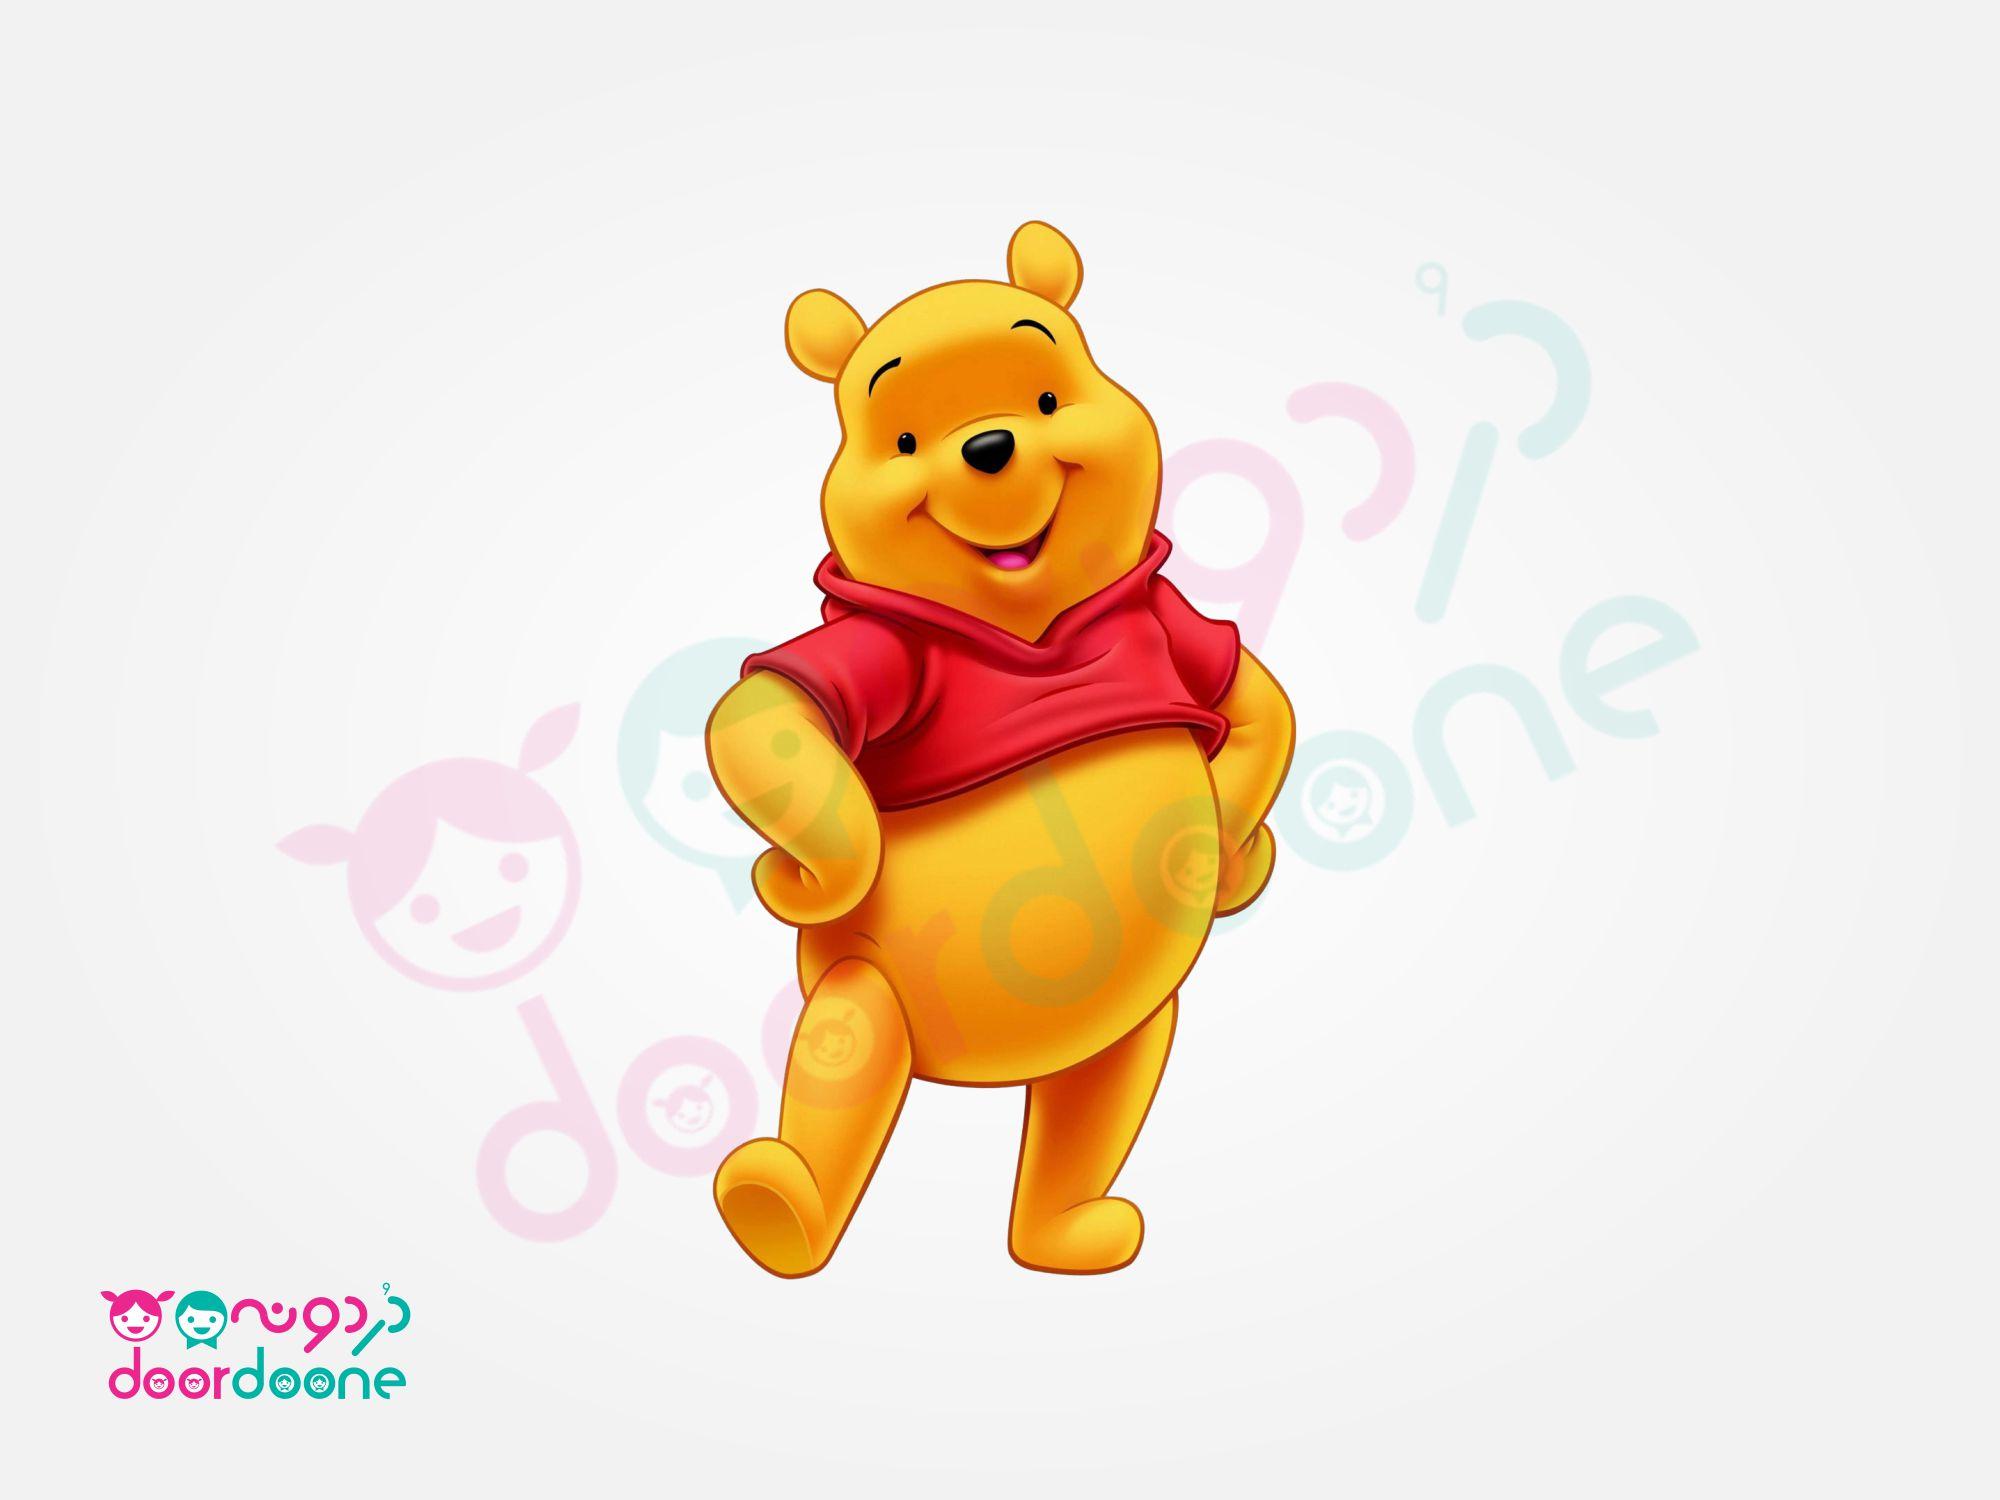 ليوان پاپ کورن تم وينی پو (Winnie the Pooh) سایز بزرگ